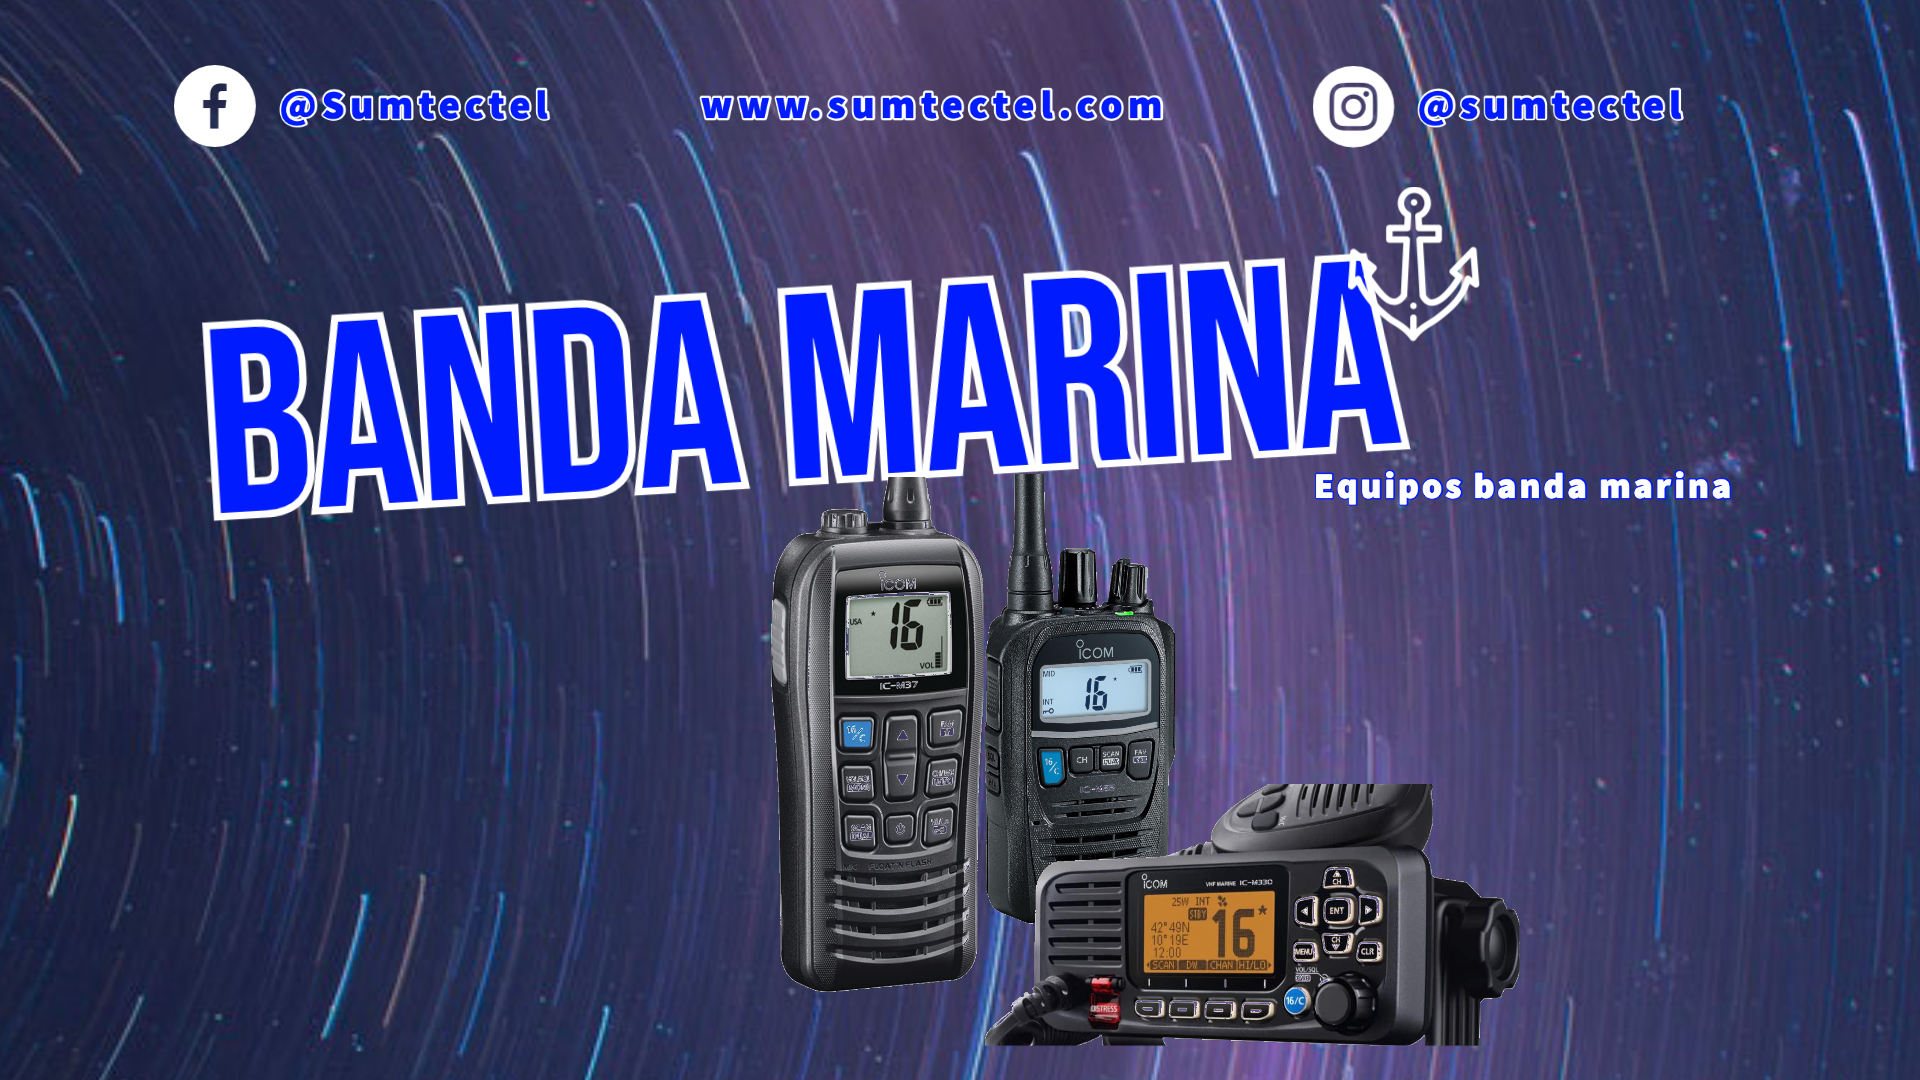 Disponemos de un amplio abanico de productos de la banda marina VHF. Portátiles, móviles, antenas y todo tipo de accesorios para tu embarcación profesional o de recreo, y en las primeras marcas del mercado: ICOM, SIRIO...